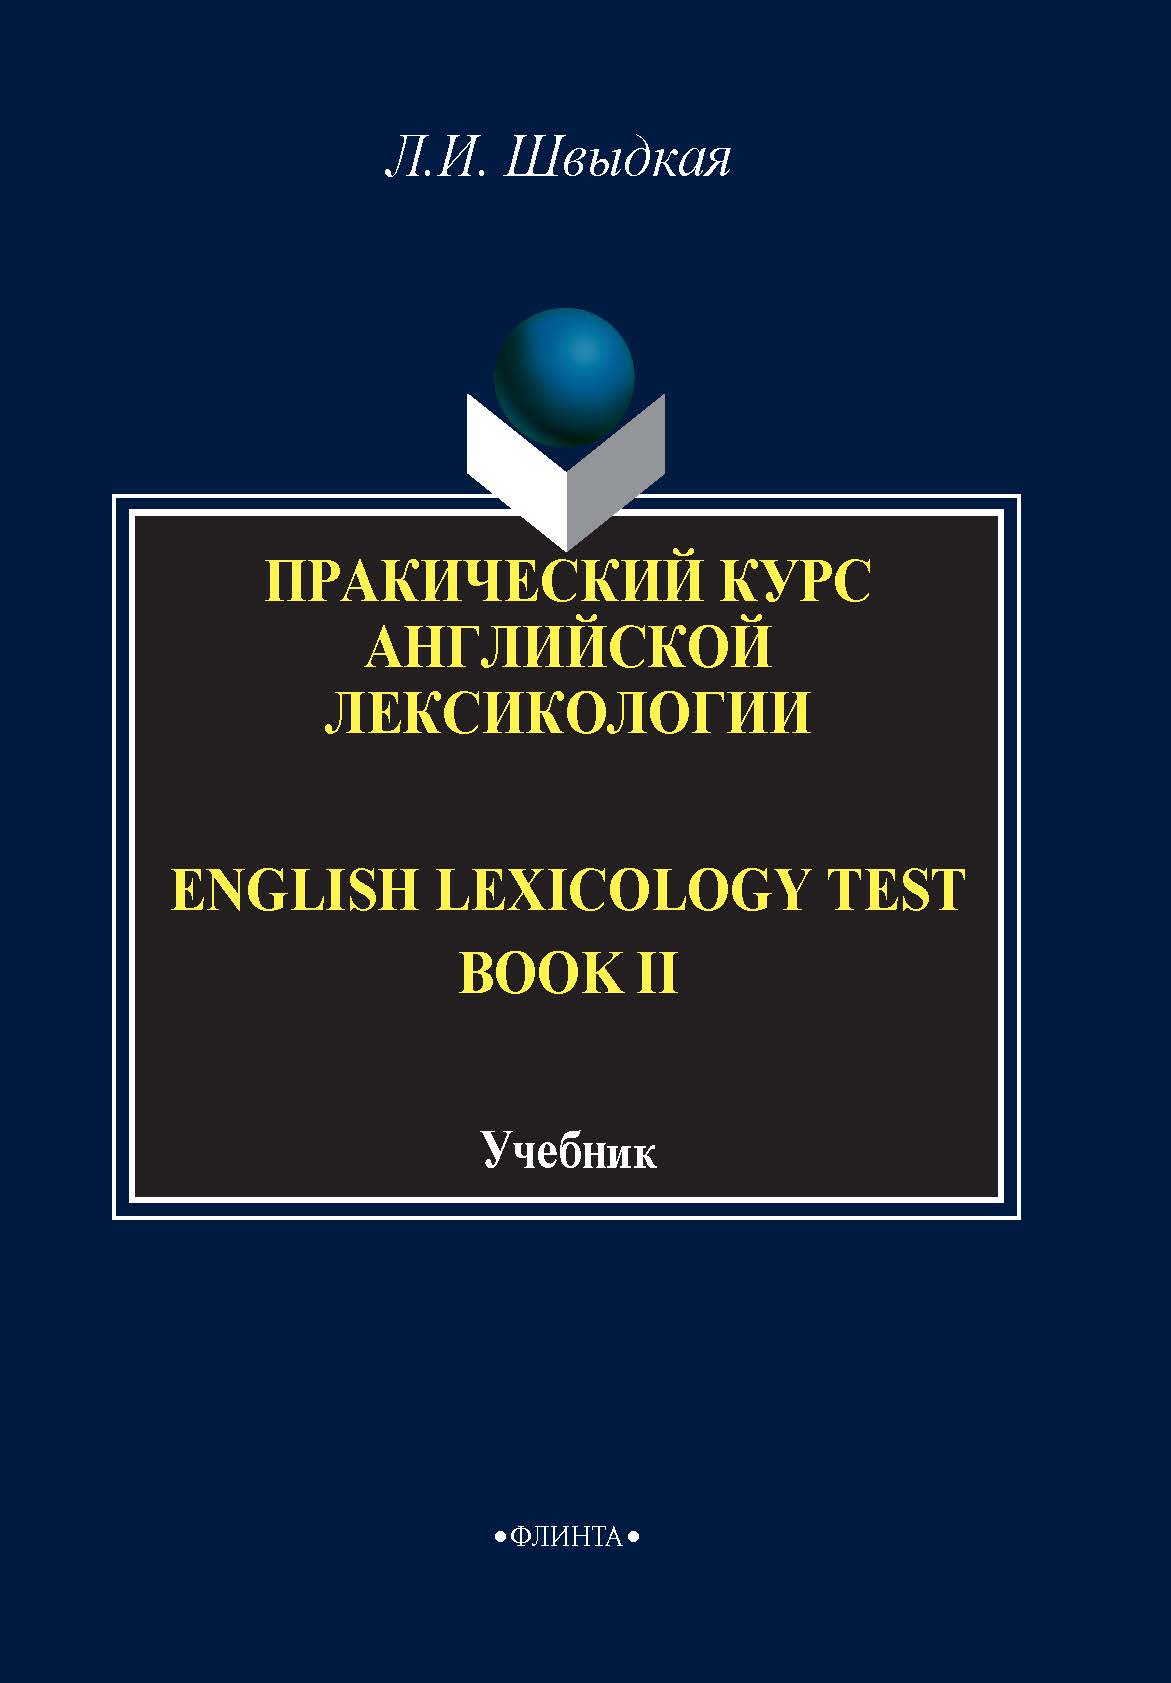 English Lexicology Test Book.Практический курс английской лексикологии. Часть II